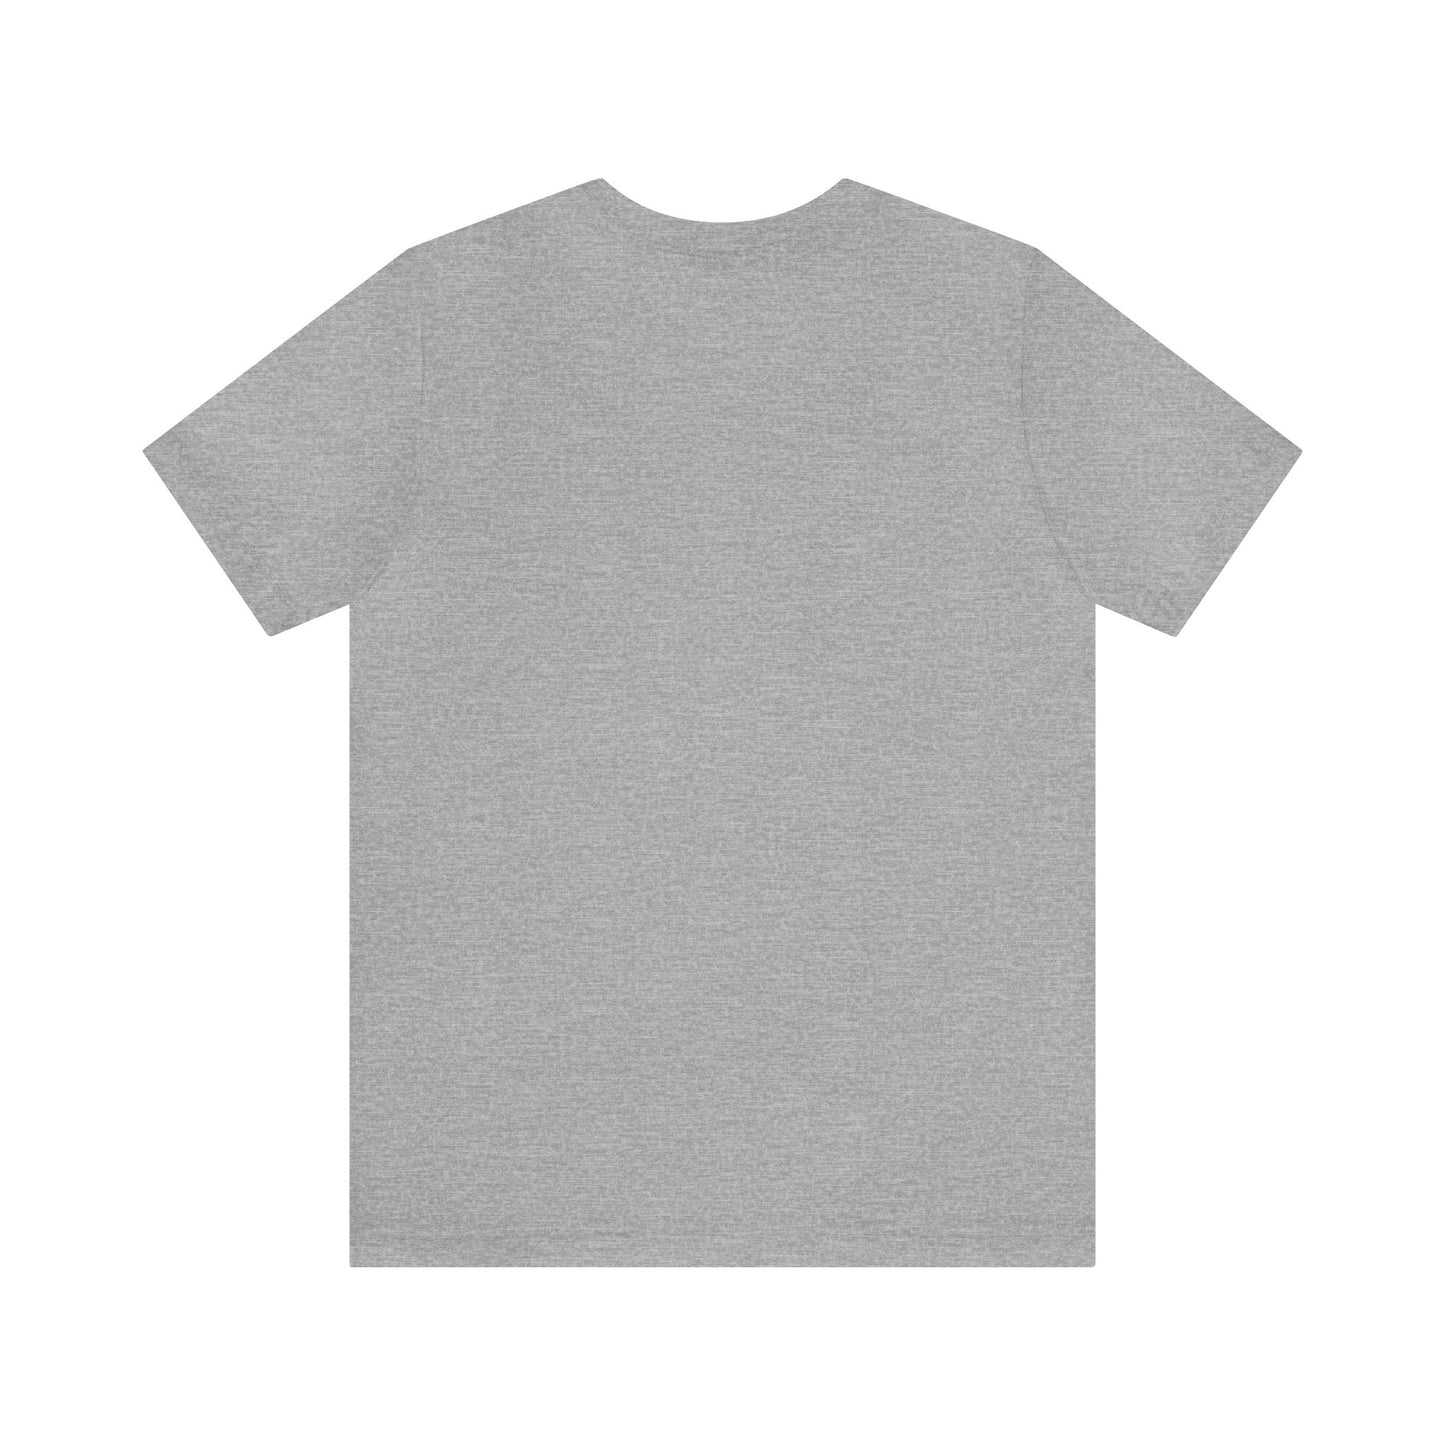 Send Nodes Short Sleeve Men's Women's Unisex T-Shirt